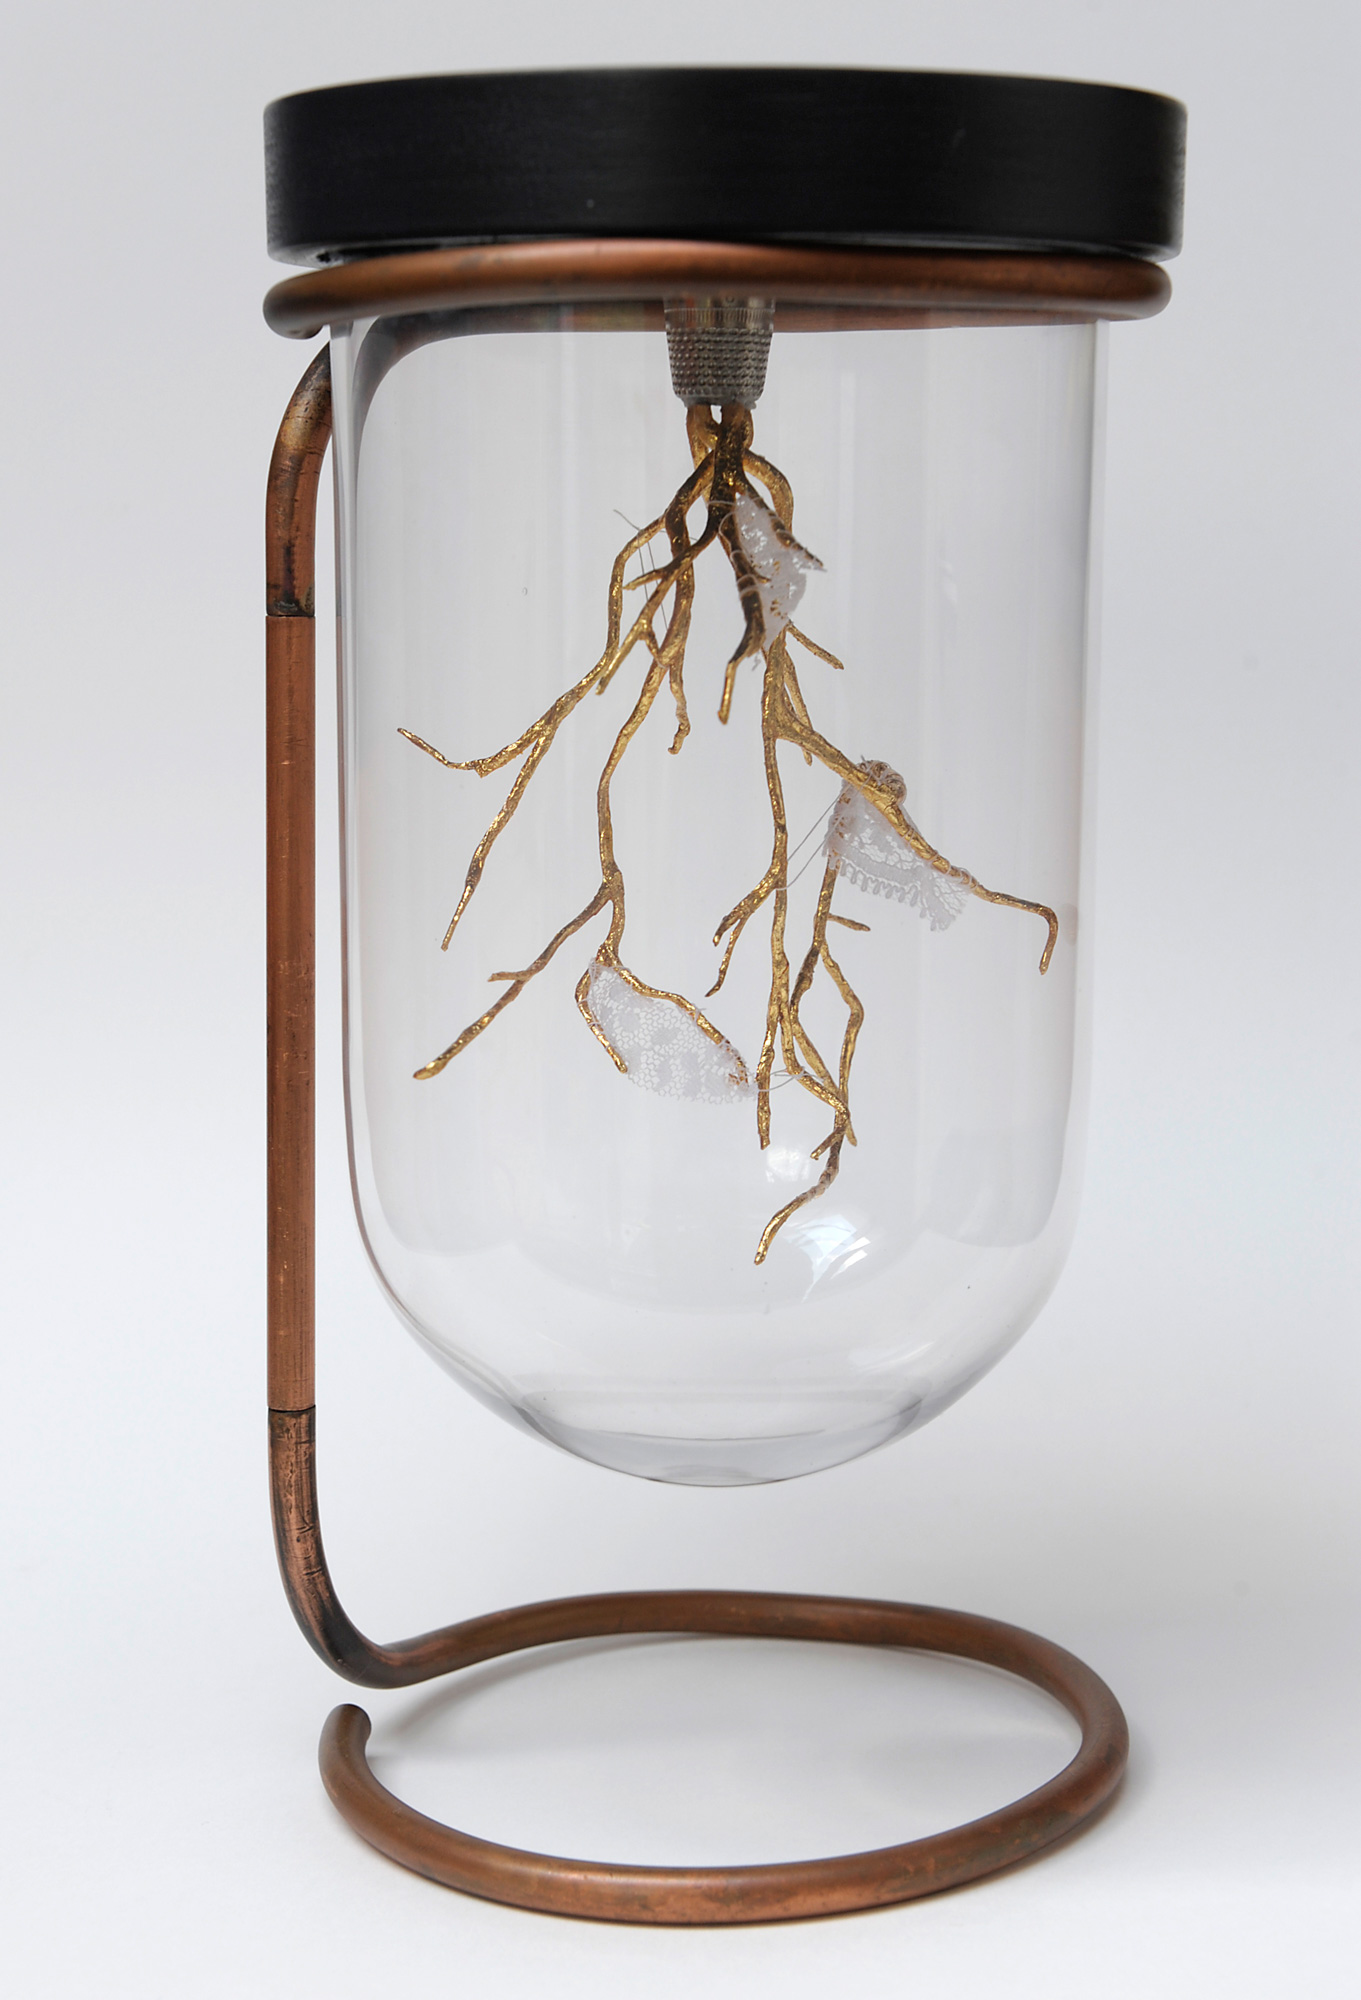 Renouer avec ses racines - Pâte polymère recouverte de feuille d'or, dentelle, fil de soie, globe en verre - 30 x 15 cm - 2016
